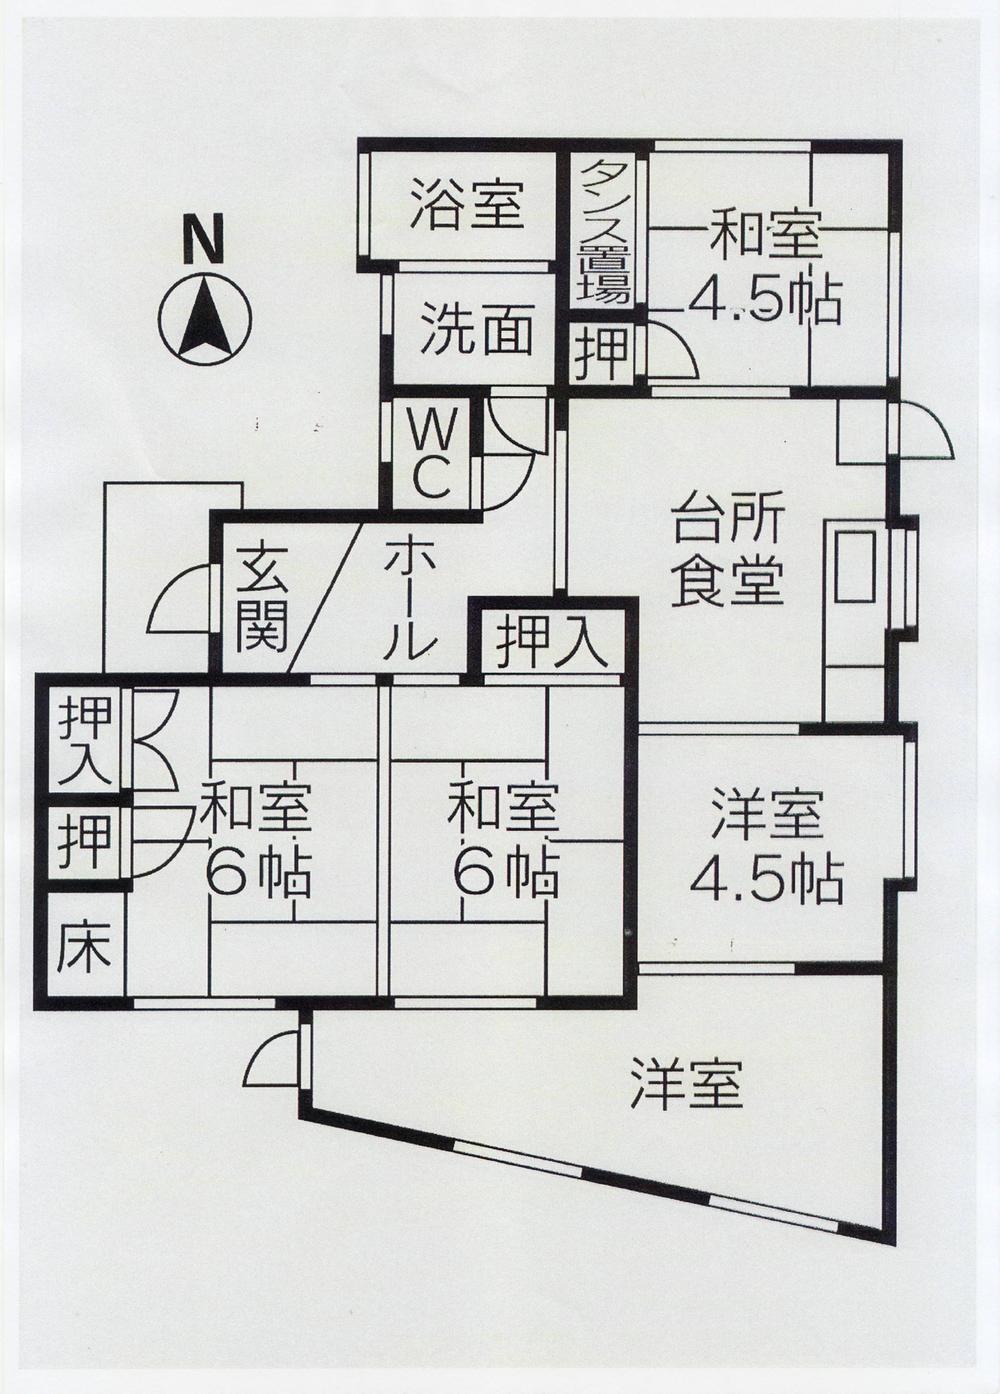 Floor plan. 10.5 million yen, 4LDK, Land area 148.75 sq m , Building area 82.75 sq m